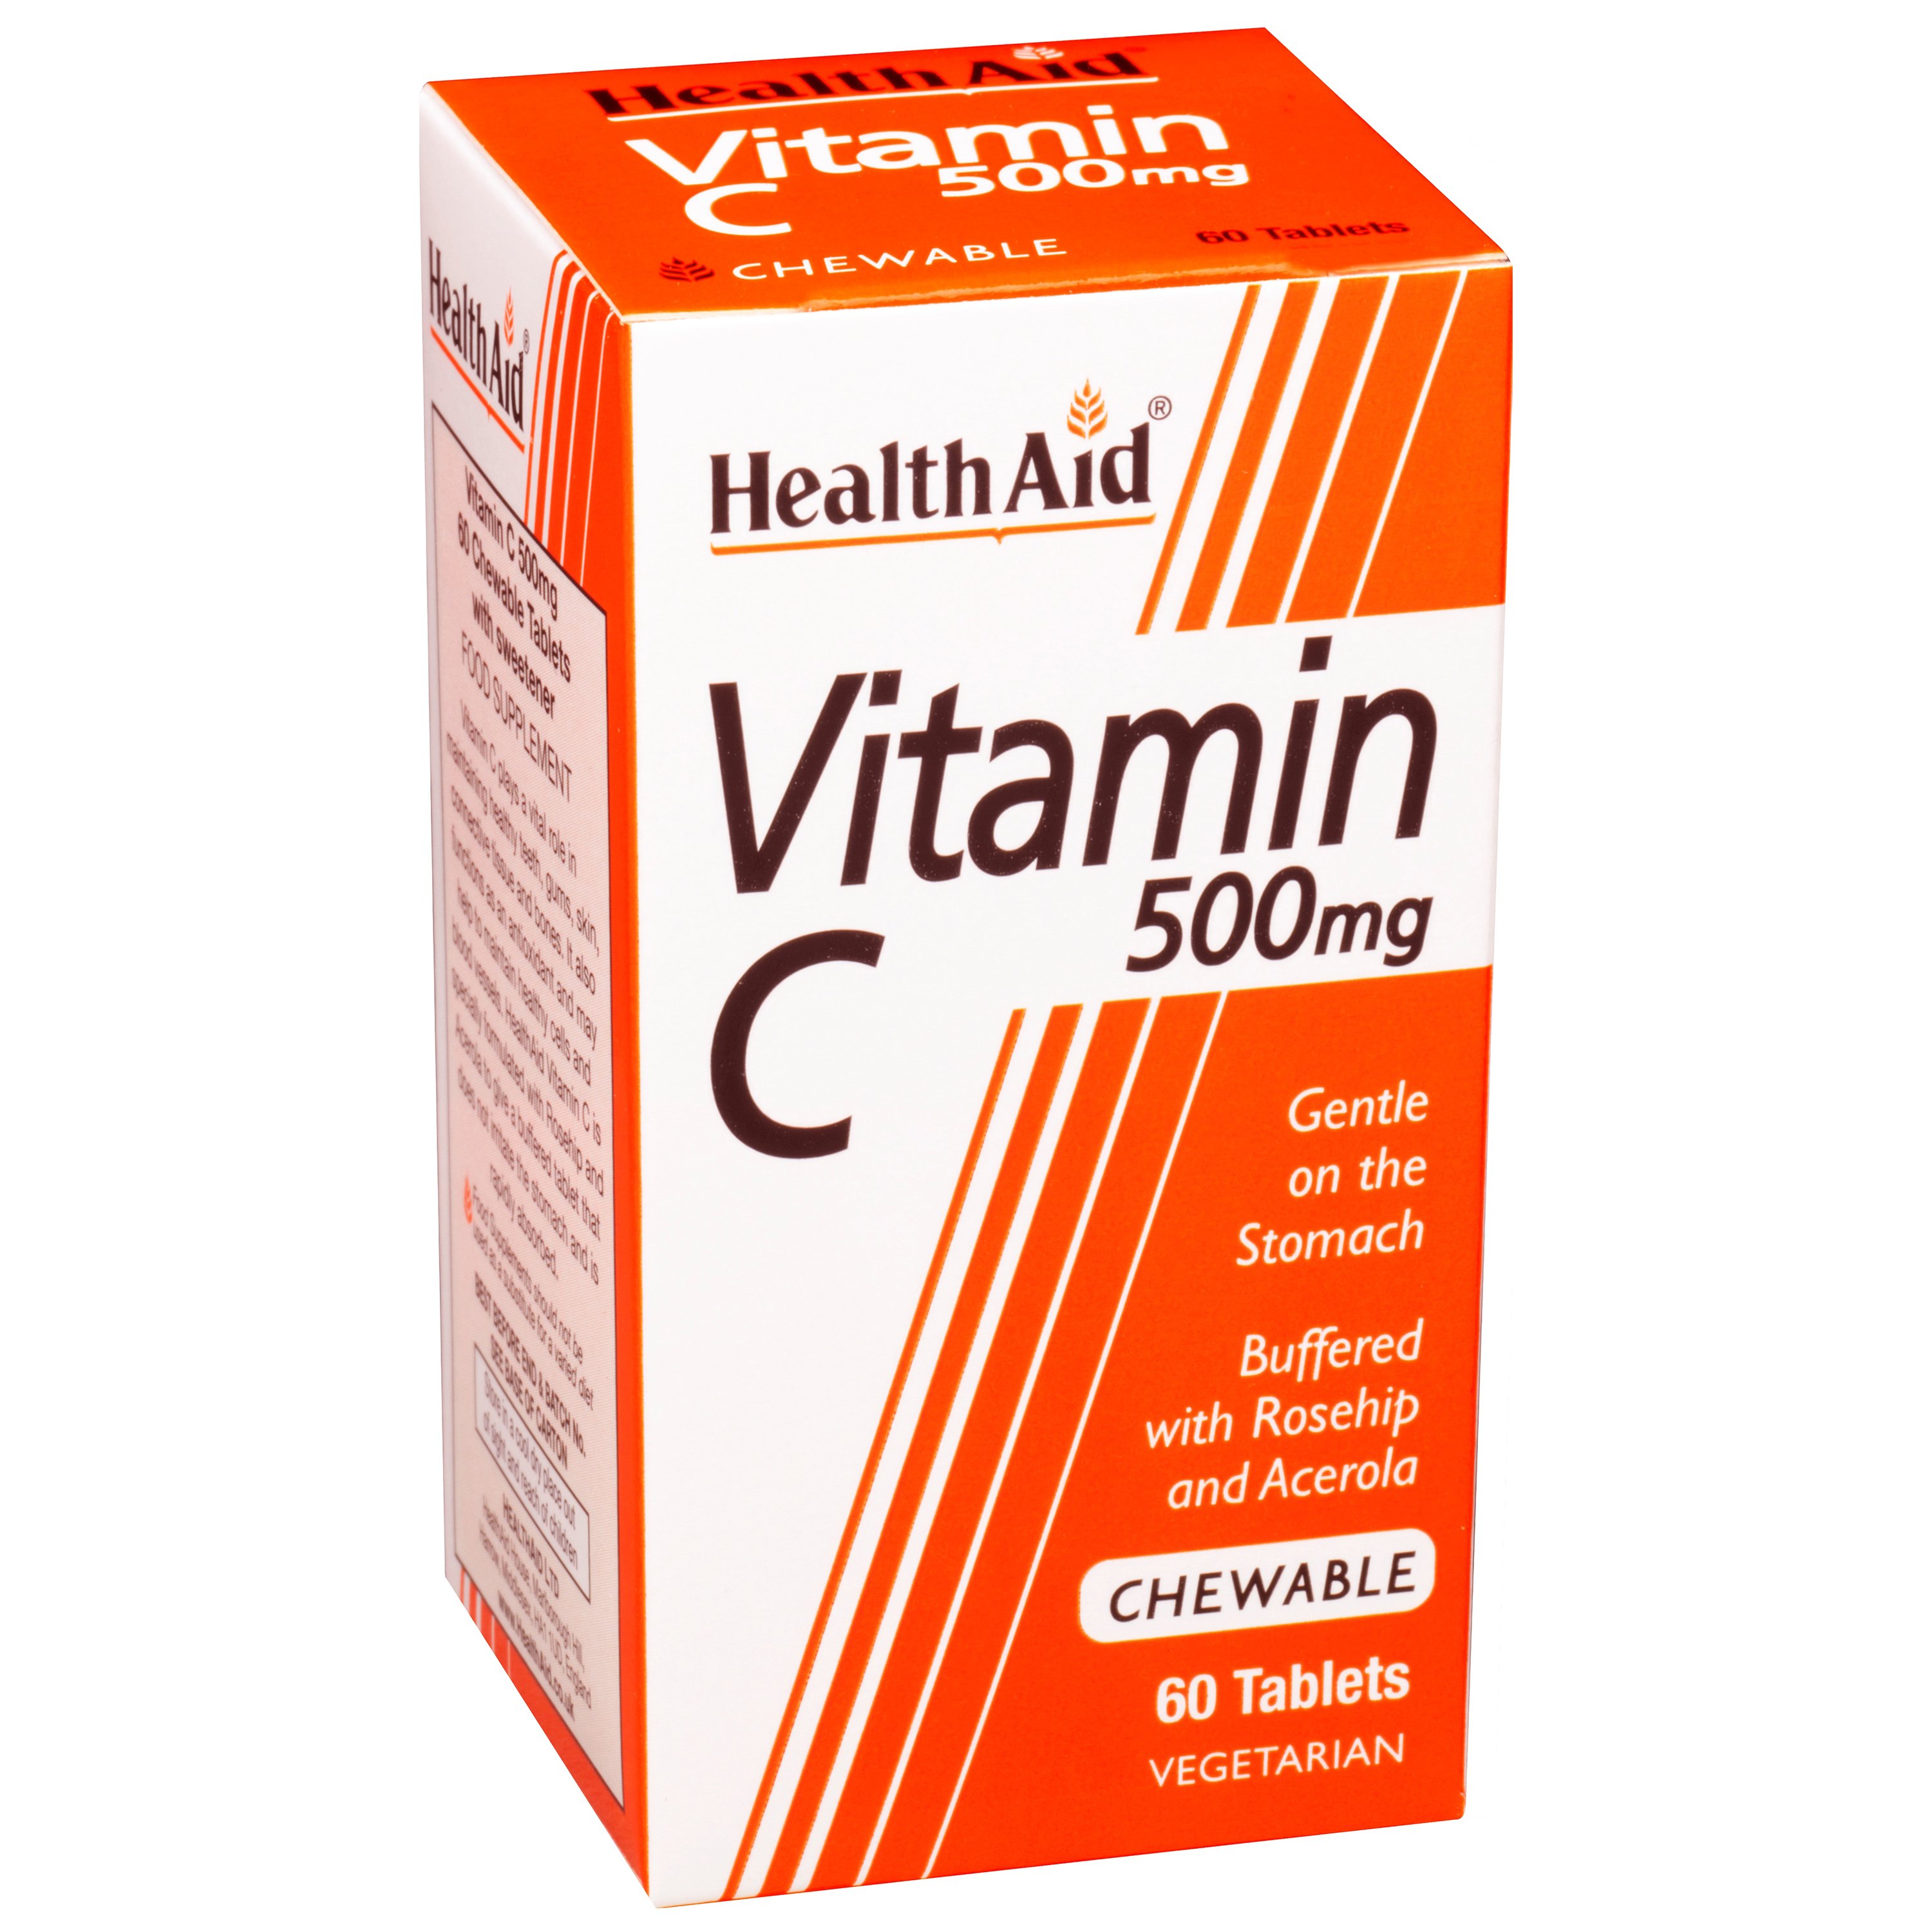 Health Aid Vitamin C 500mg Chewable 60tabs